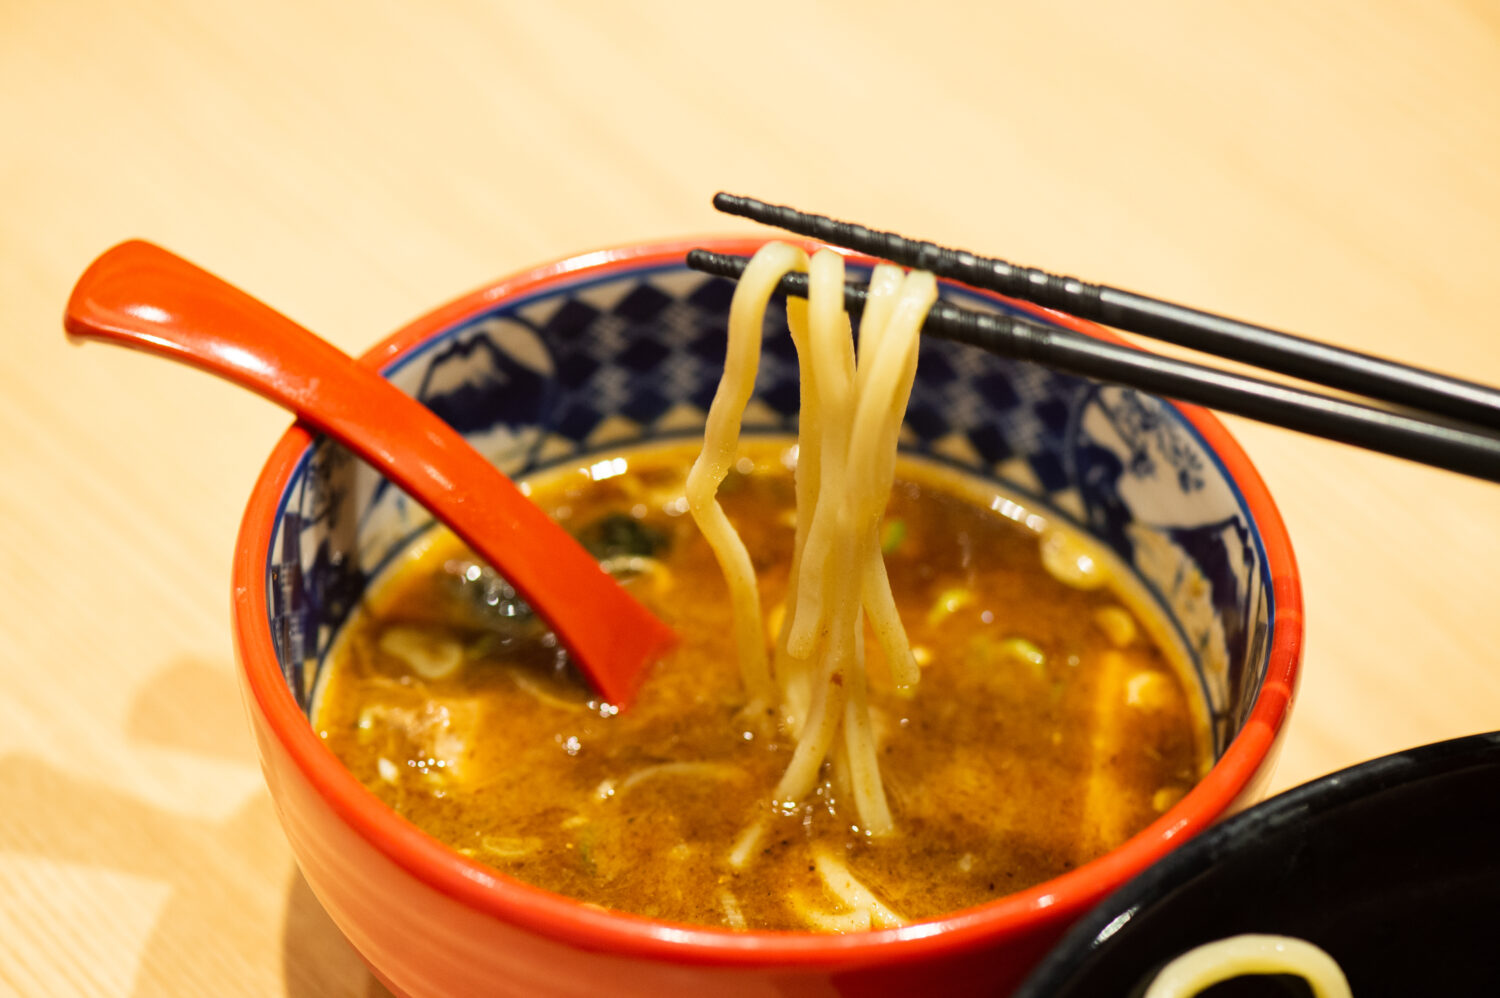 Dip noodles into the soup, and slurp